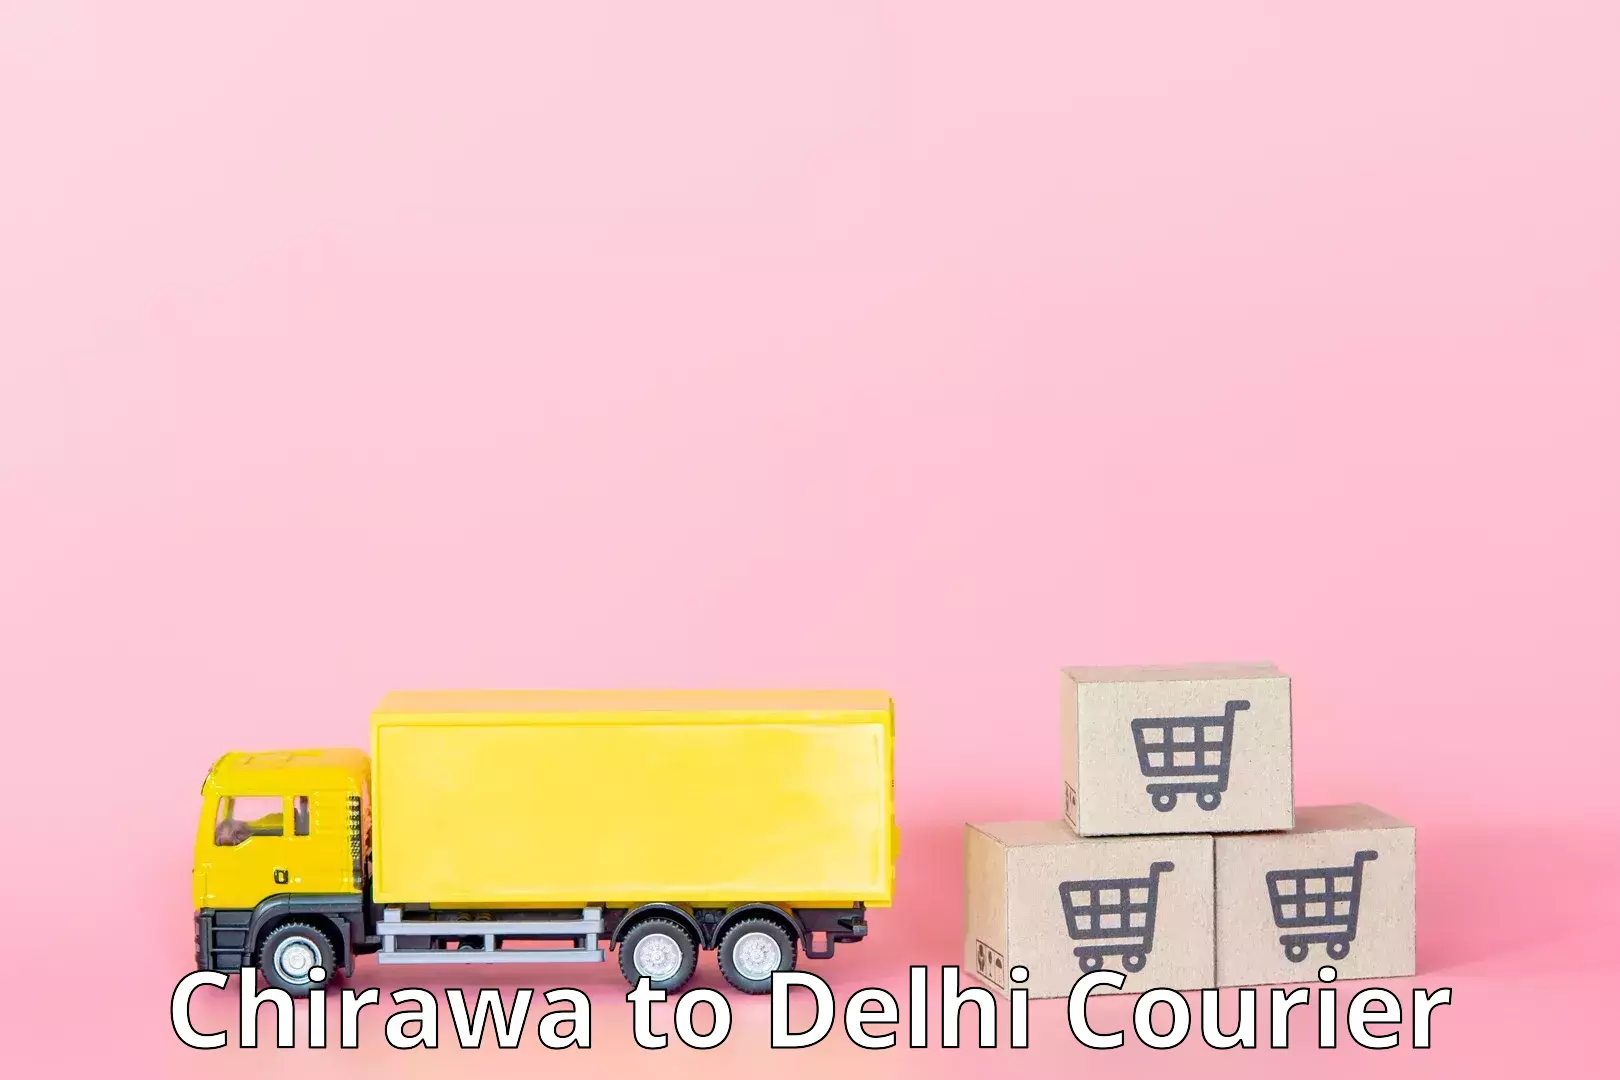 High-priority parcel service Chirawa to Delhi